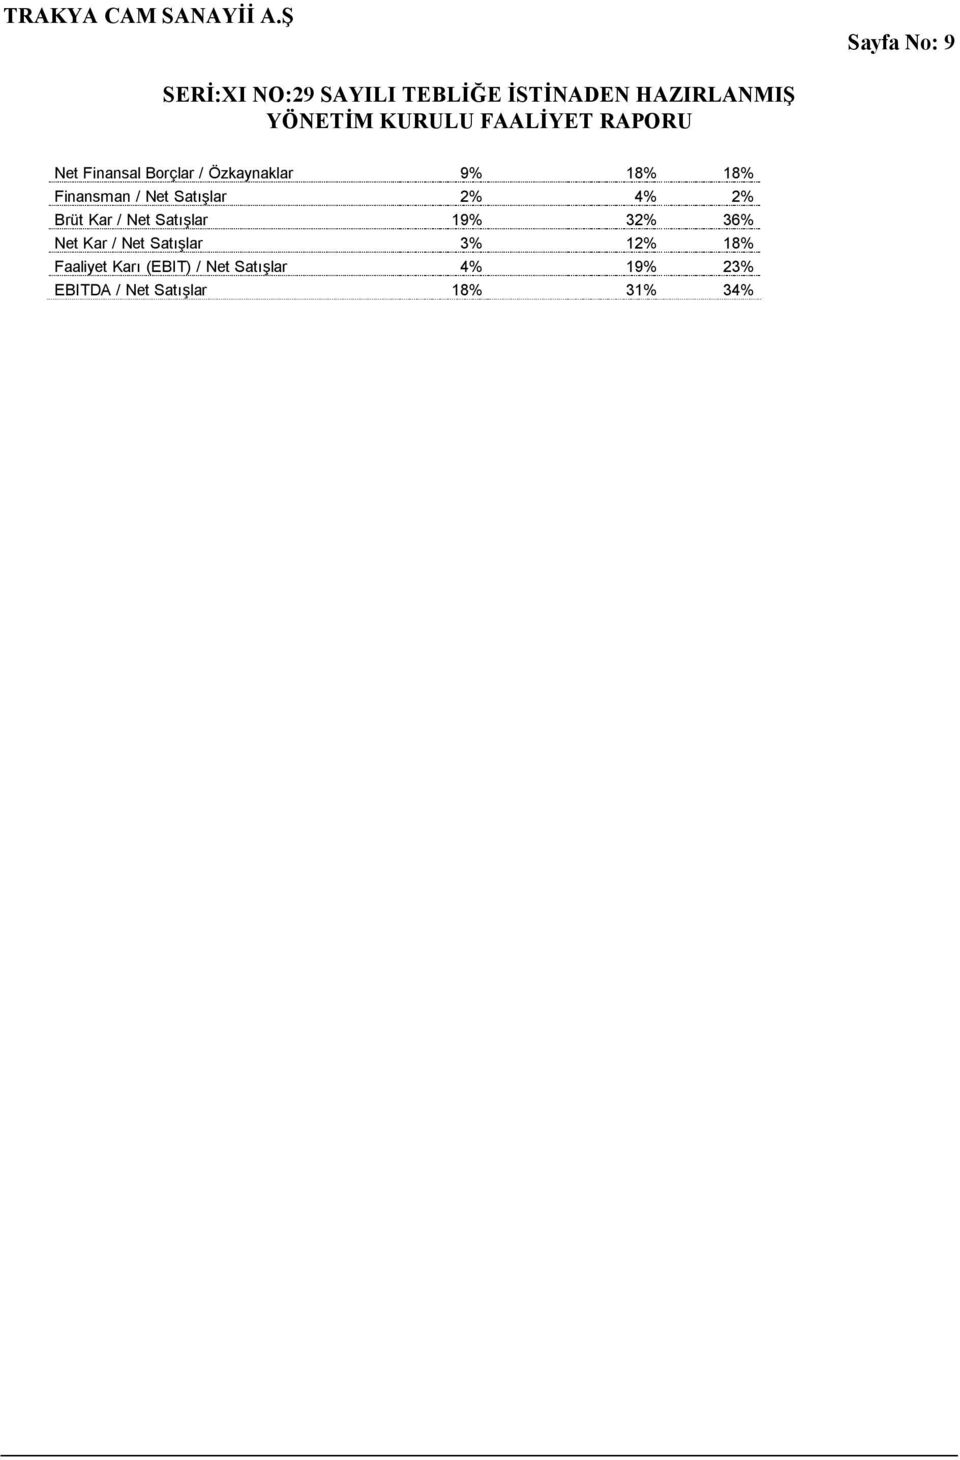 19% 32% 36% Net Kar / Net Satışlar 3% 12% 18% Faaliyet Karı